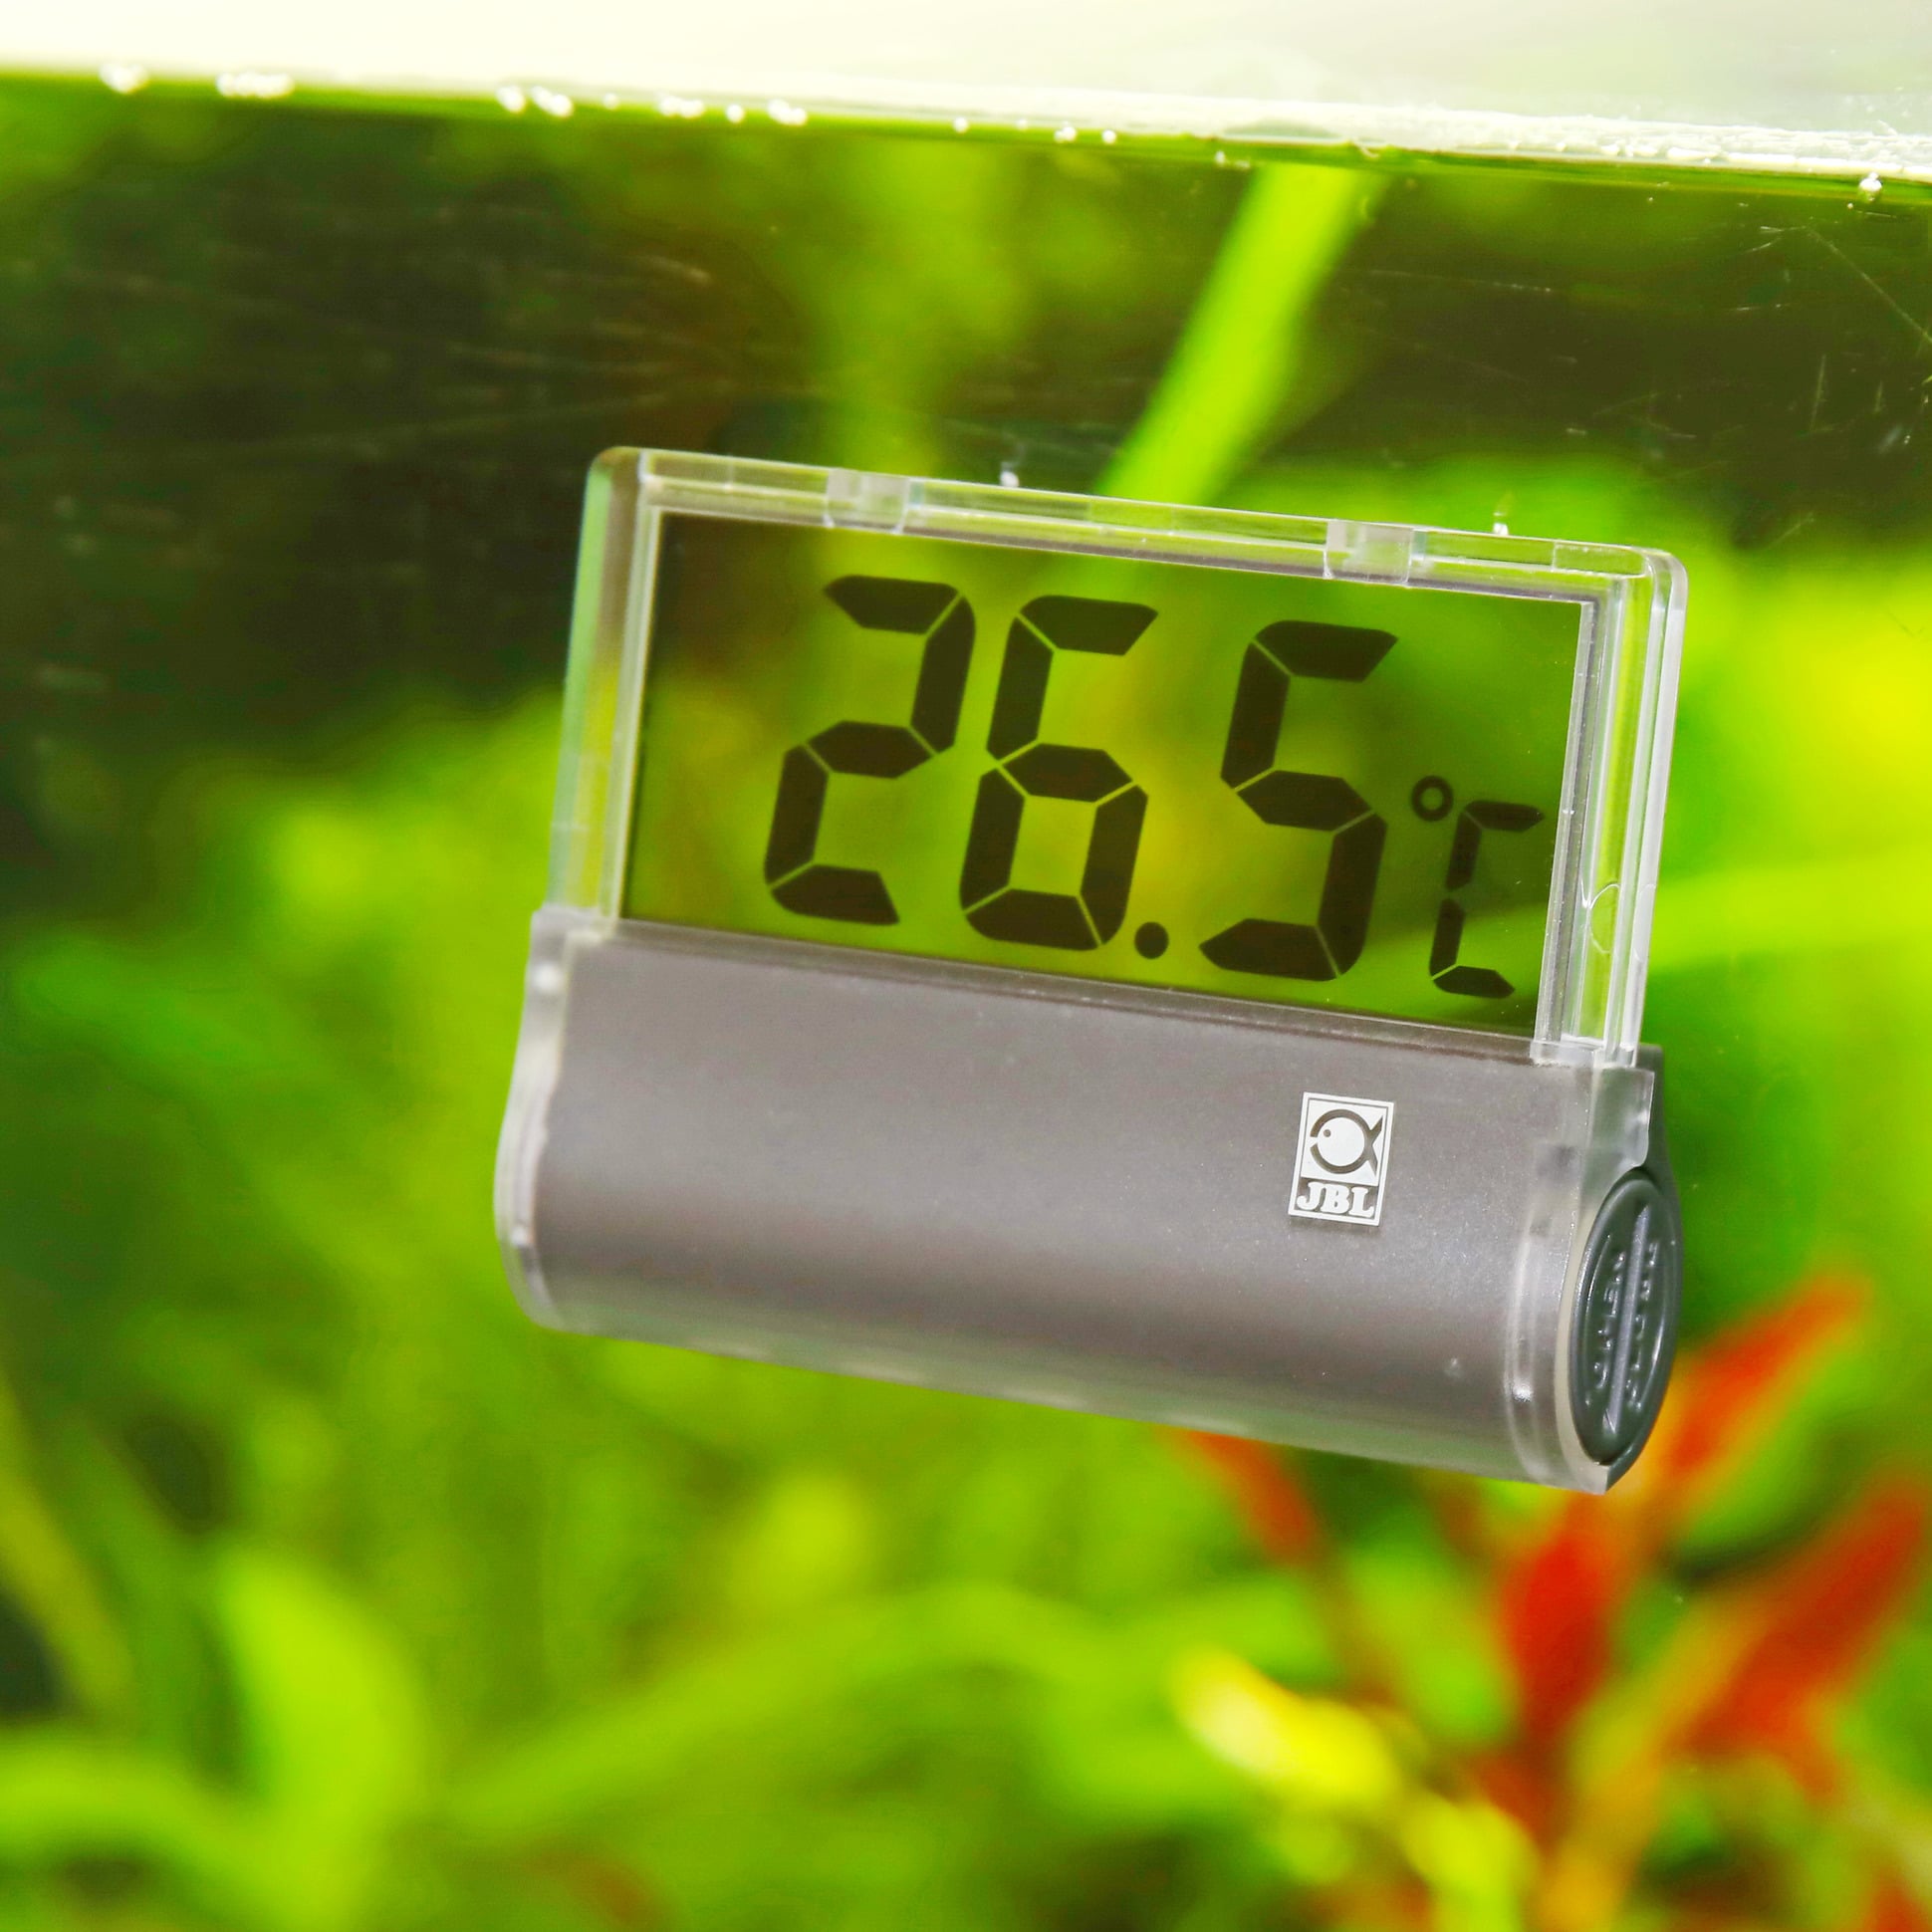 jbl-digiscan-thermometre-numerique-installe-sur-la-vitre-d-aquarium-min